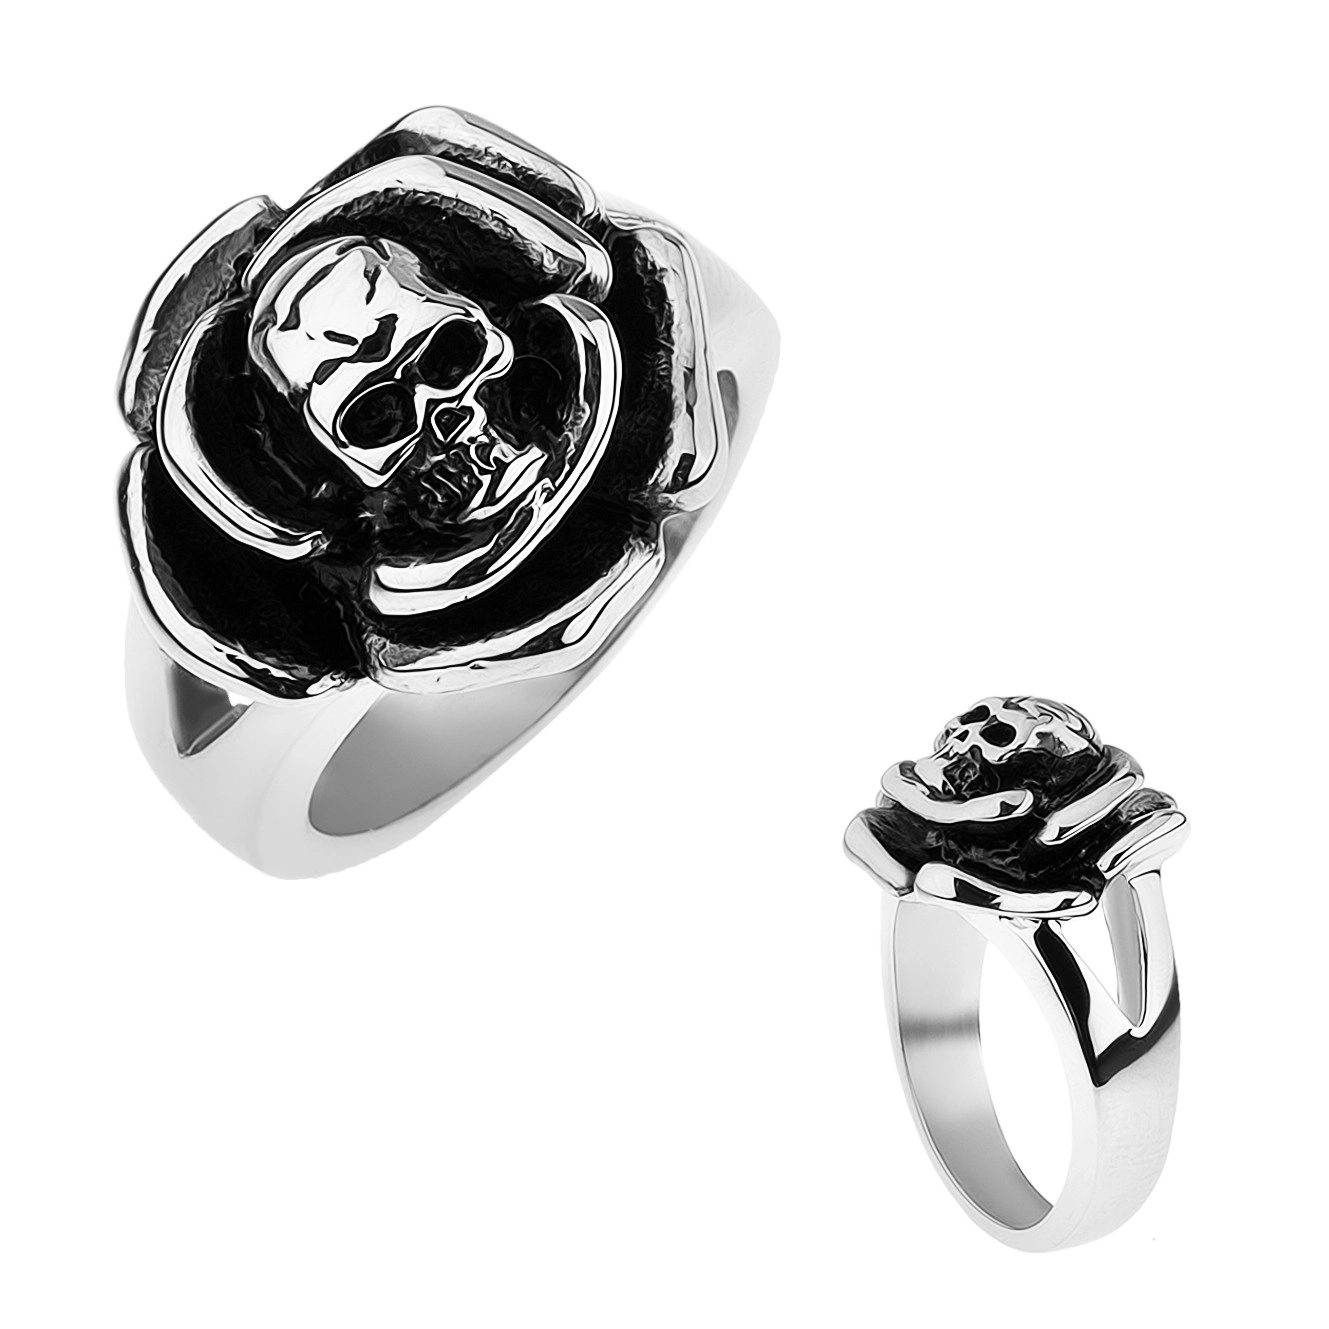 Patinovaný ocelový prsten, růže s lebkou uprostřed, rozdvojená ramena - Velikost: 67